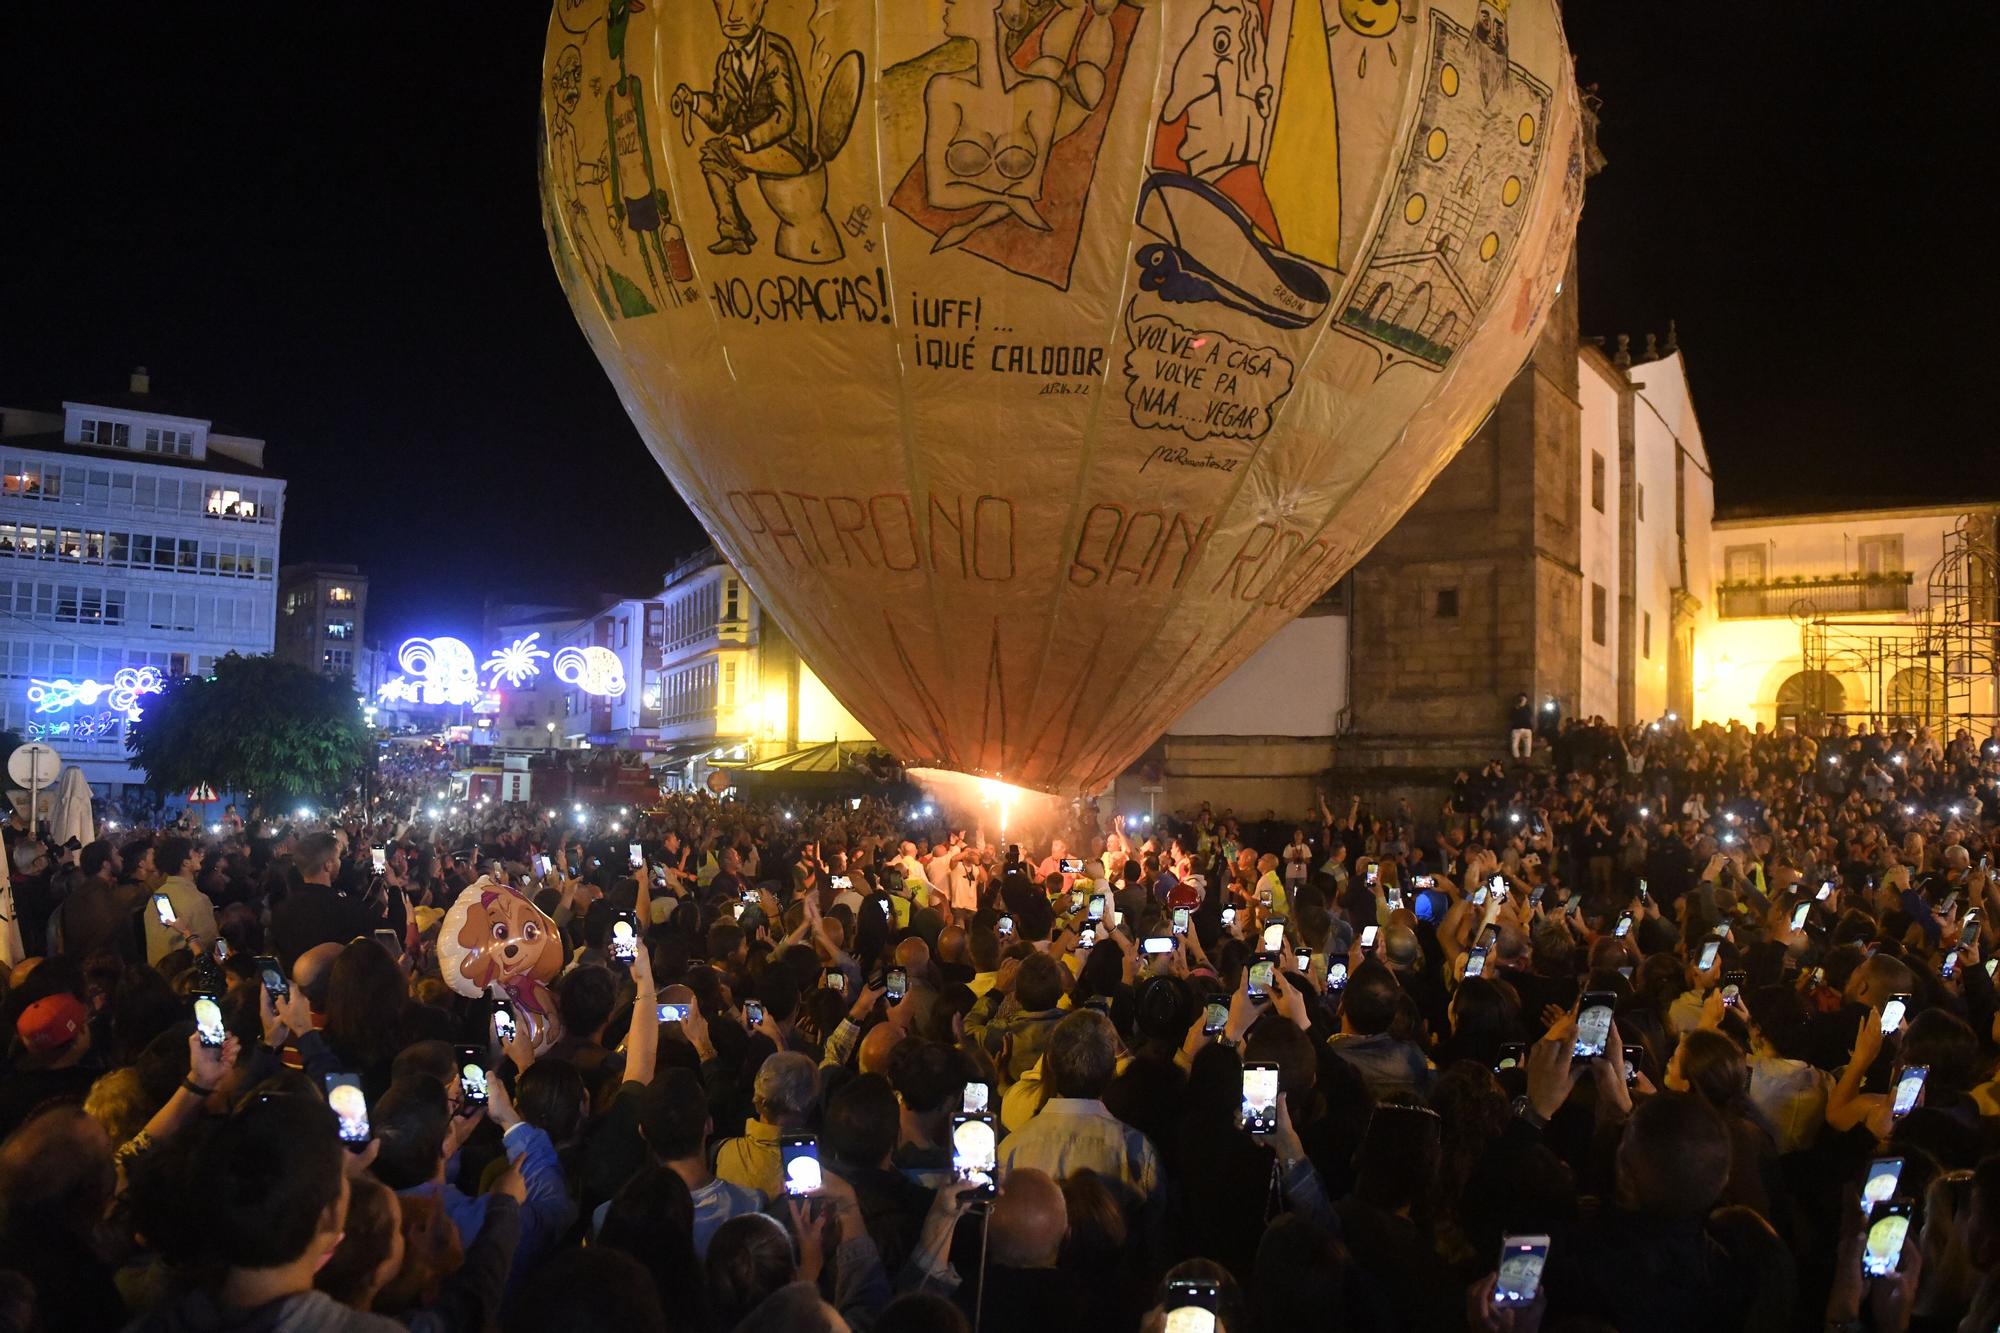 Galicia lanzó el globo más grande del mundo